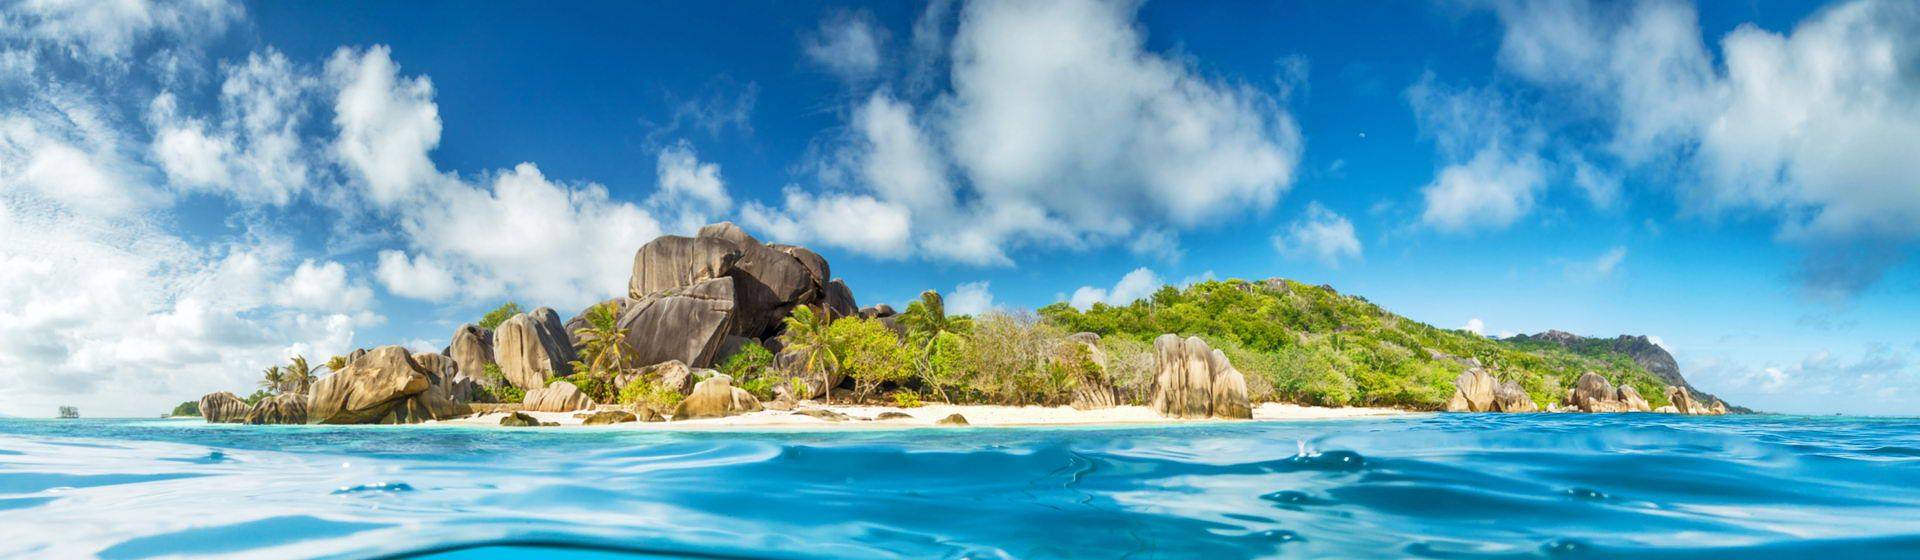 Holidays to Seychelles Image